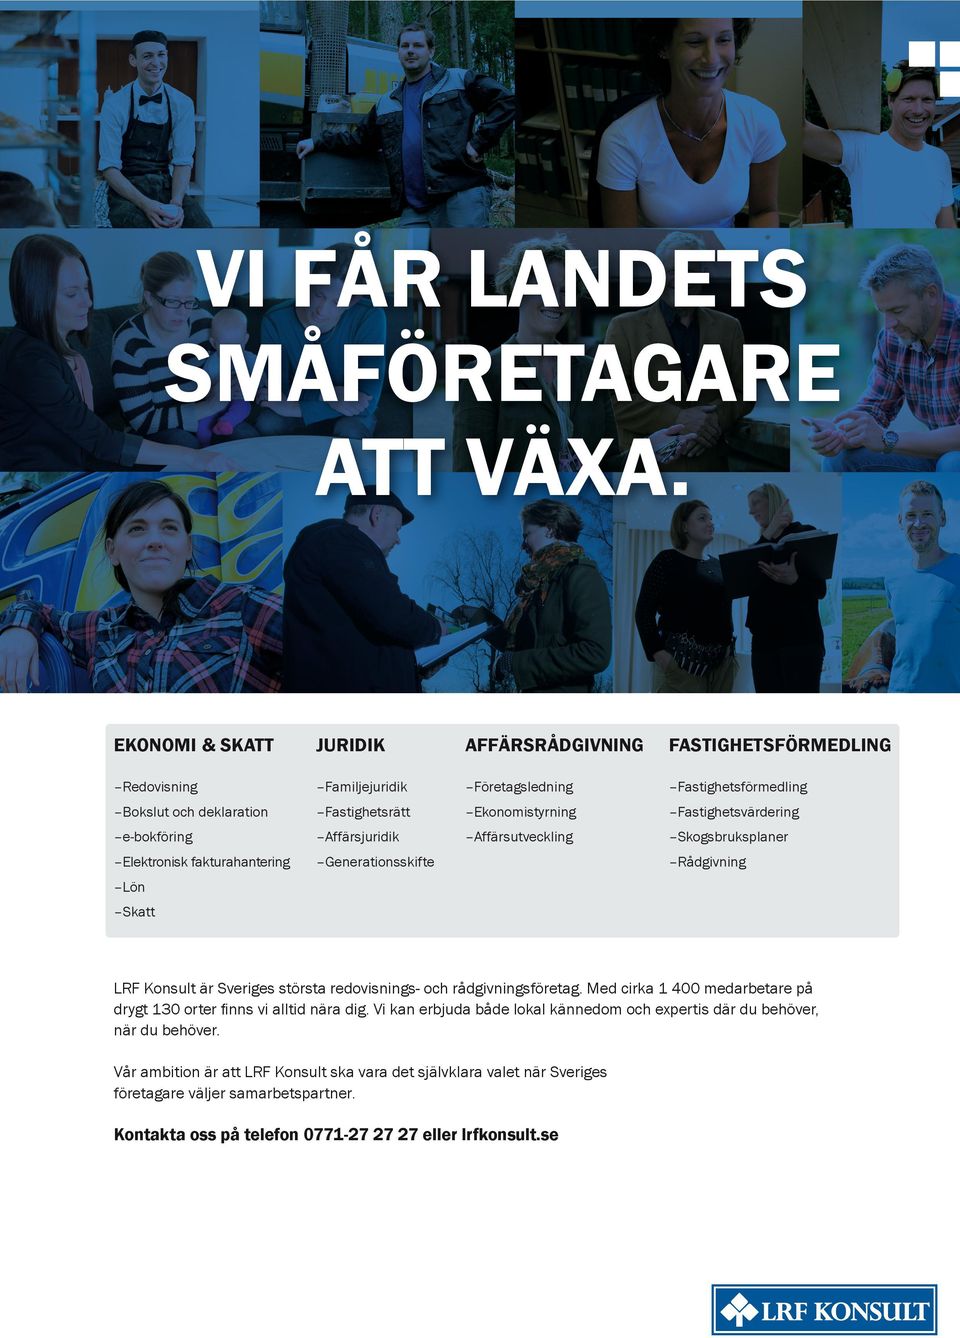 Fastighetsvärdering e-bokföring Affärsjuridik Affärsutveckling Skogsbruksplaner Elektronisk fakturahantering Generationsskifte Rådgivning Lön Skatt LRF Konsult är Sveriges största